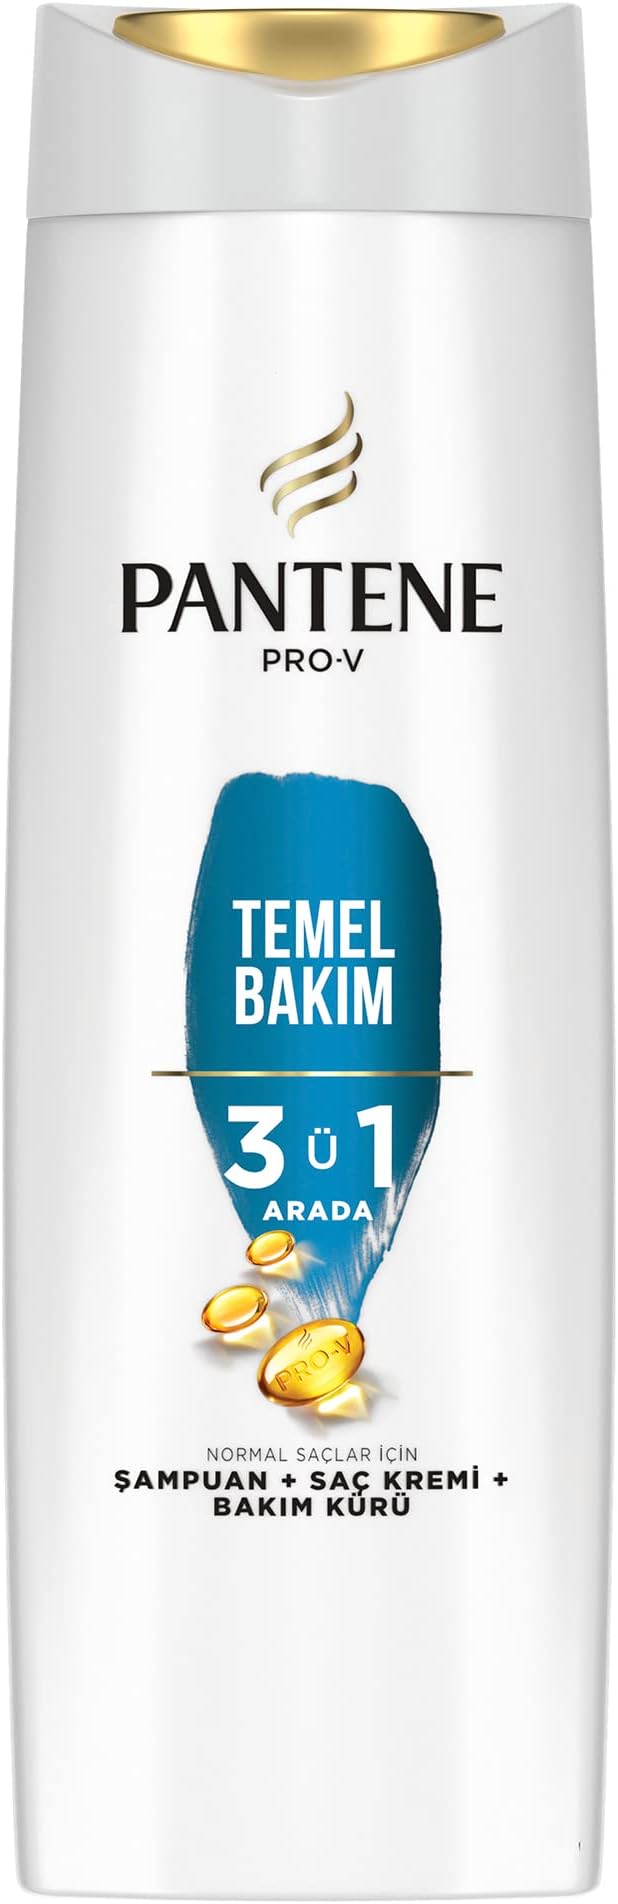 شامپو پنتن 3 در 1 مدل Temel Bakim مناسب موهای معمولی 350میل